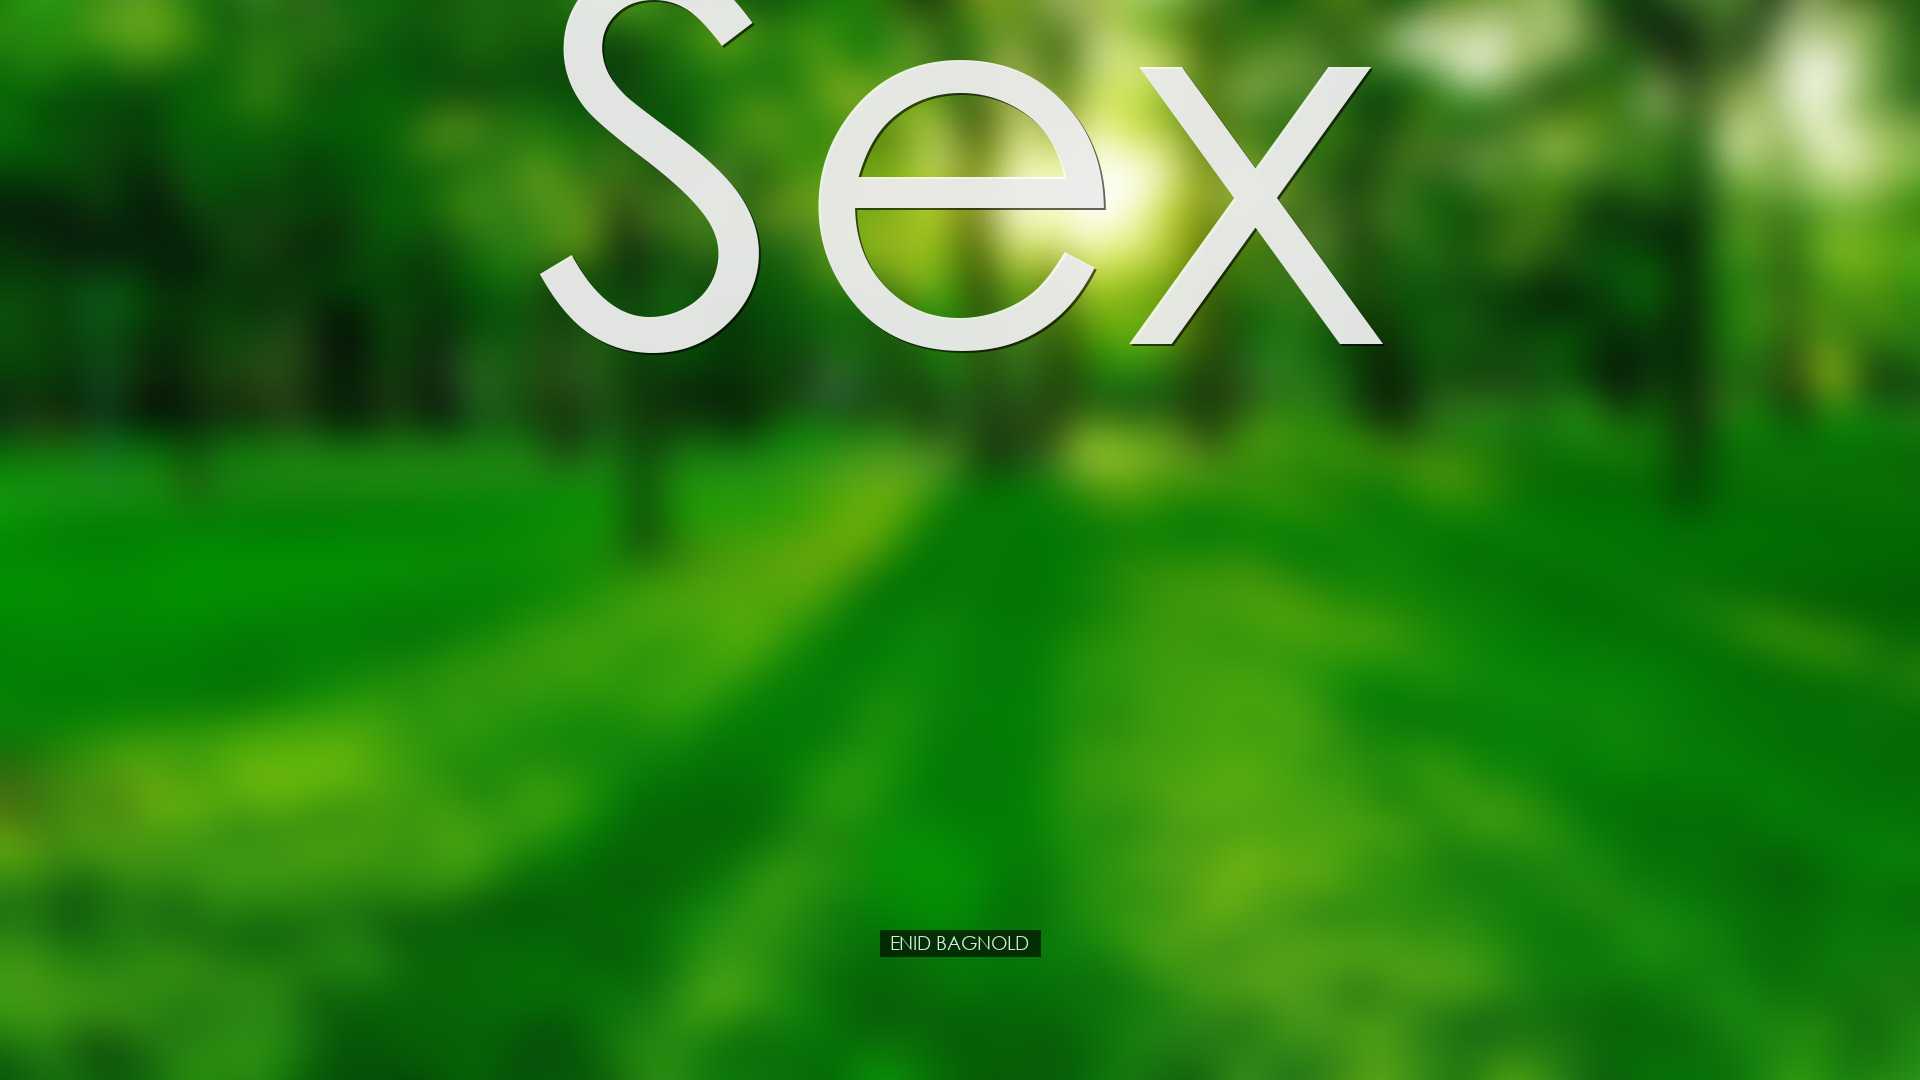 Sex - Enid Bagnold